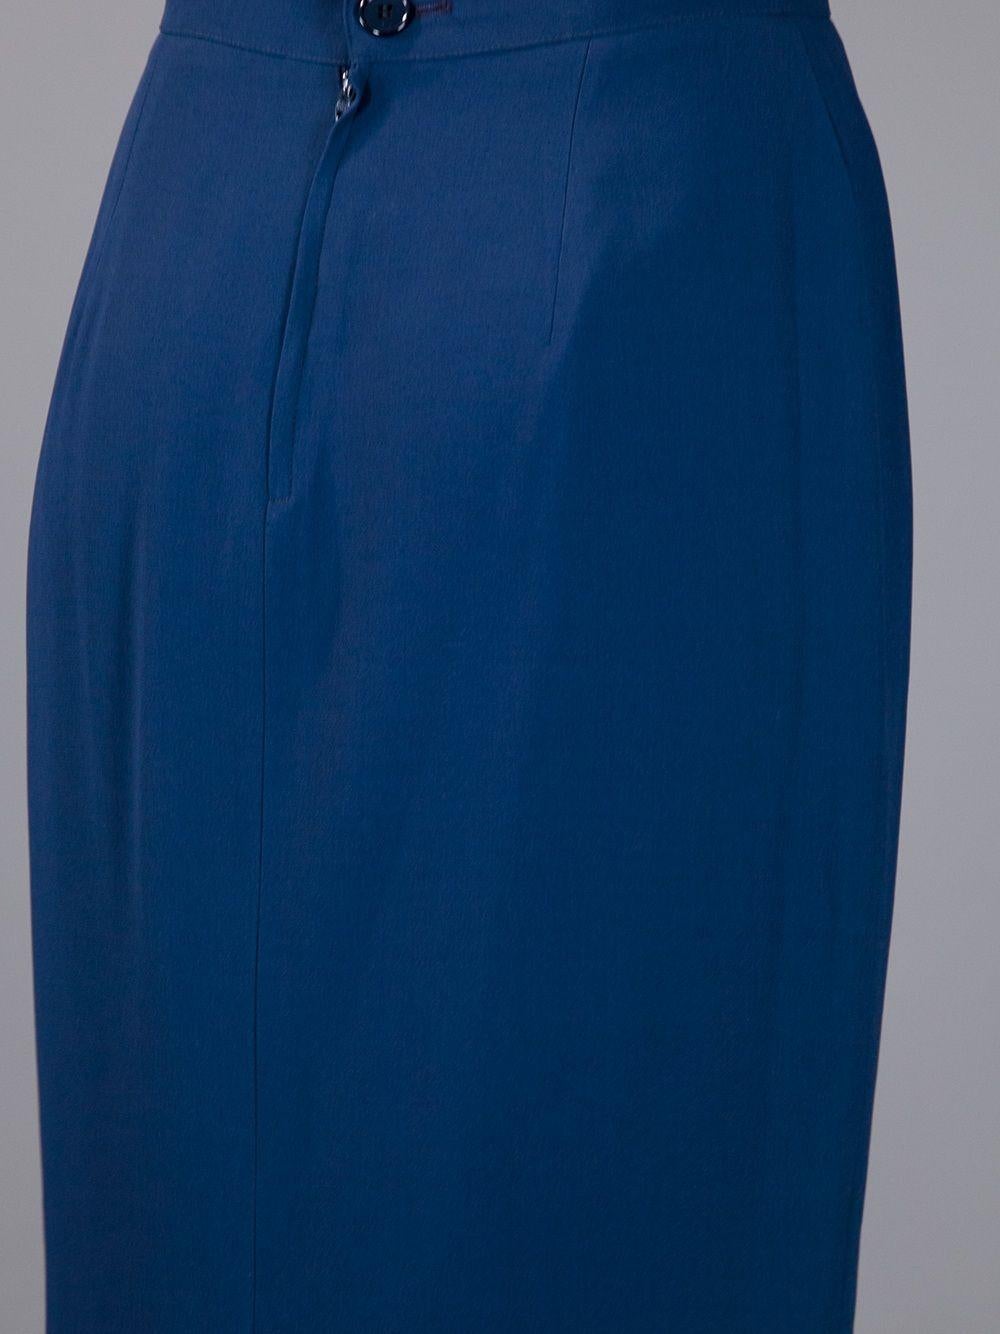 1990s Gianfranco Ferré Blue Skirt Suit 1